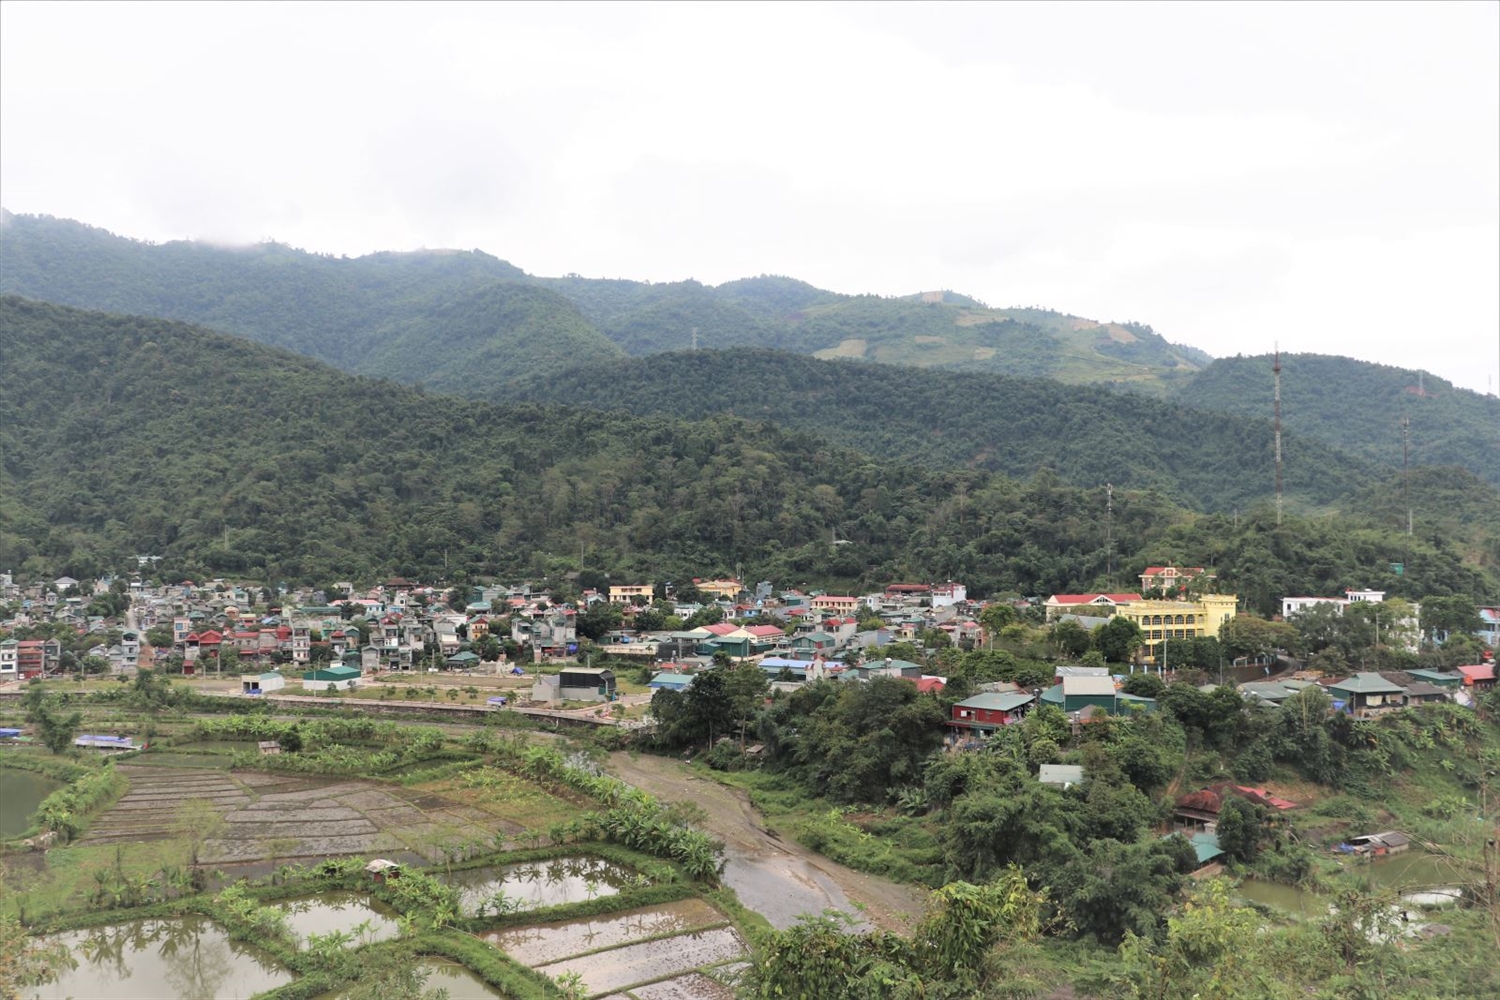 Với nguồn lực đầu tư của Nhà nước, khu vực nông thôn, miền núi đã khoác lên màu áo mới. (Trong ảnh: Một góc thị trấn Mường Chà, huyện Mường Chà, tỉnh Điện Biên)